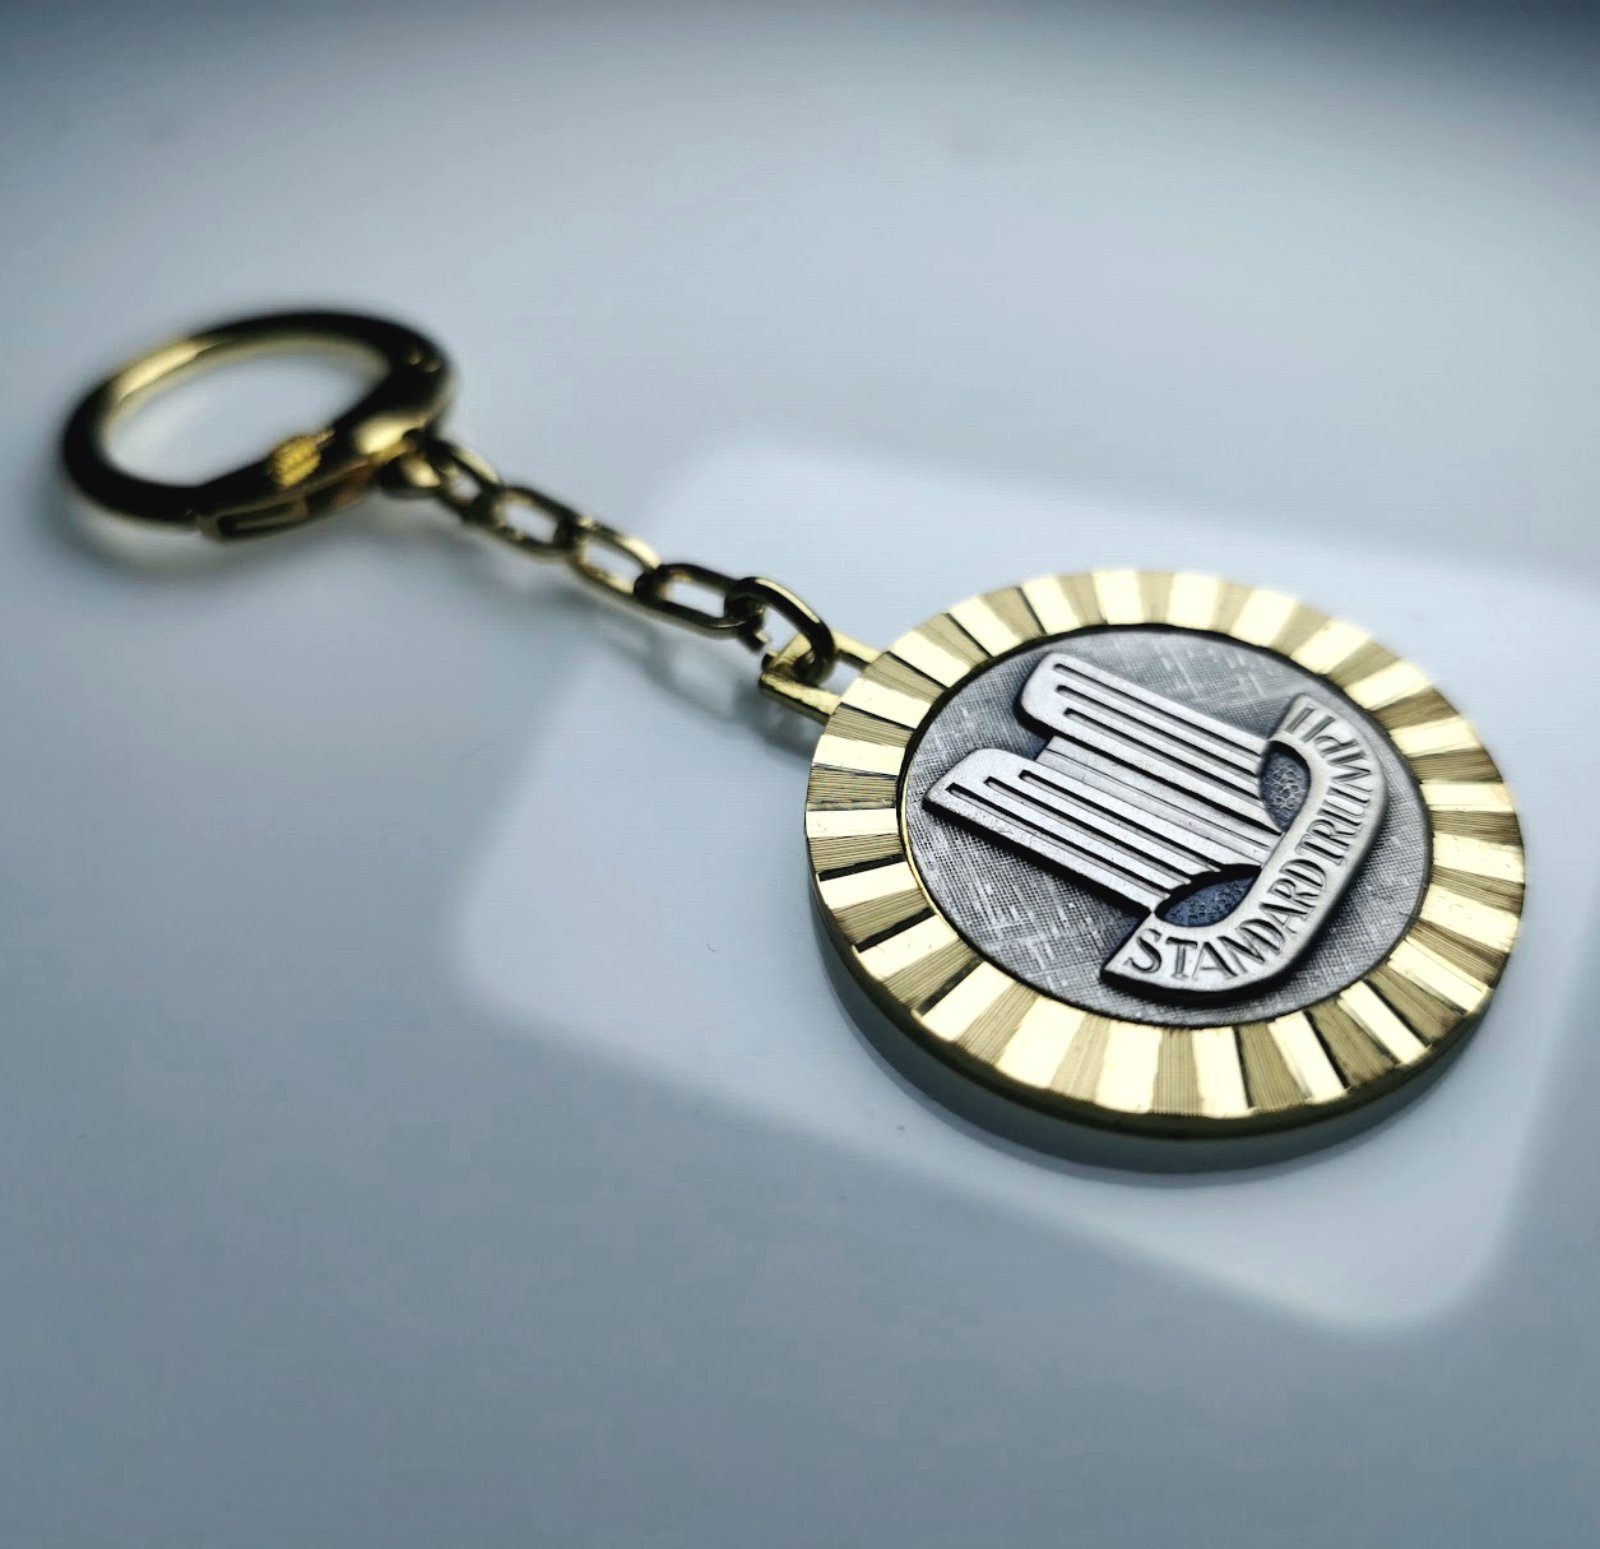 Diamantschliff STANDARD Schlüsselanhänger Metall HR TRIUMPH Autocomfort Schlüsselanhänger 1958 orig. Anhänger